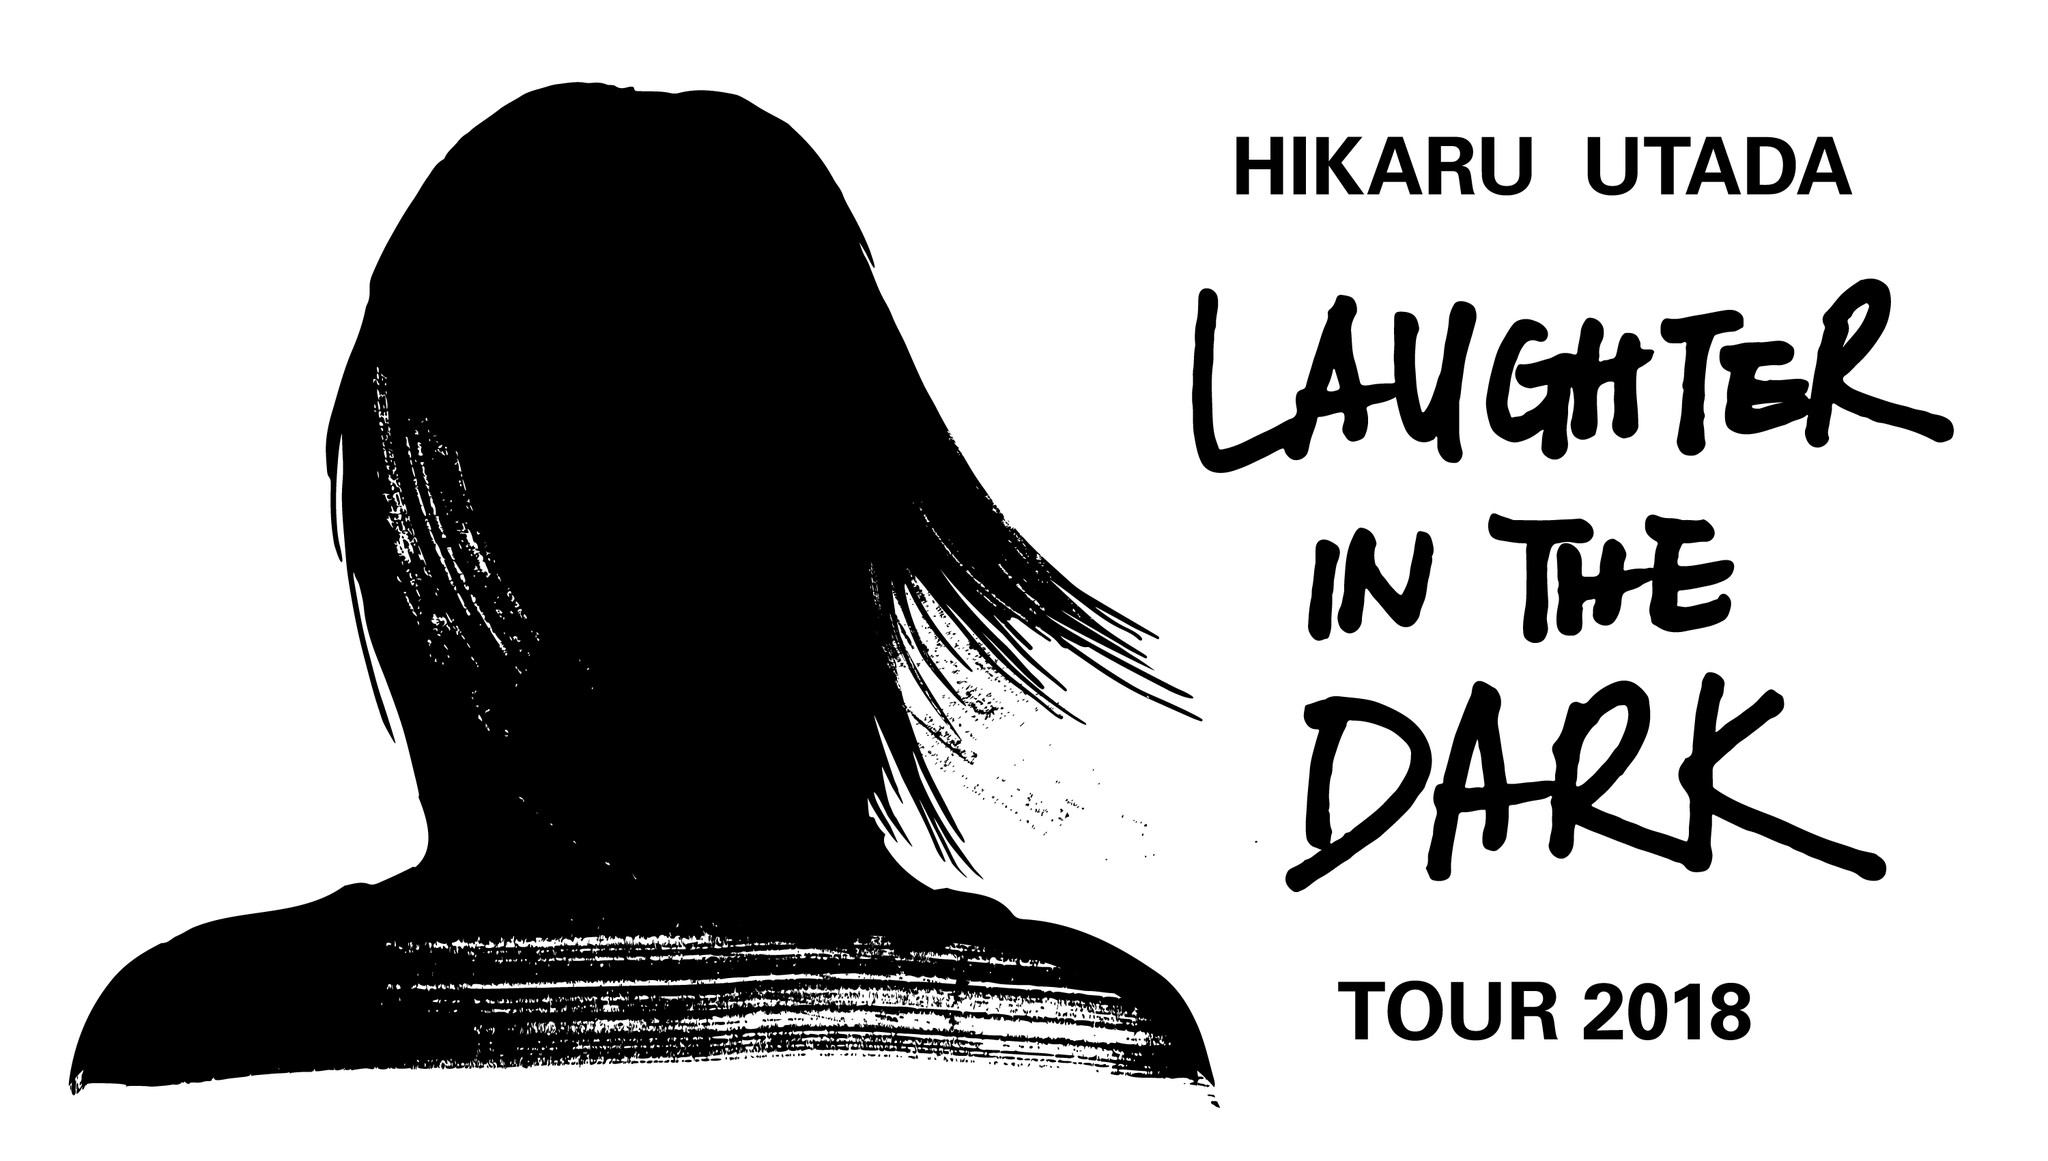 宇多田ヒカル国内ツアー“Hikaru Utada Laughter in the Dark Tour 2018